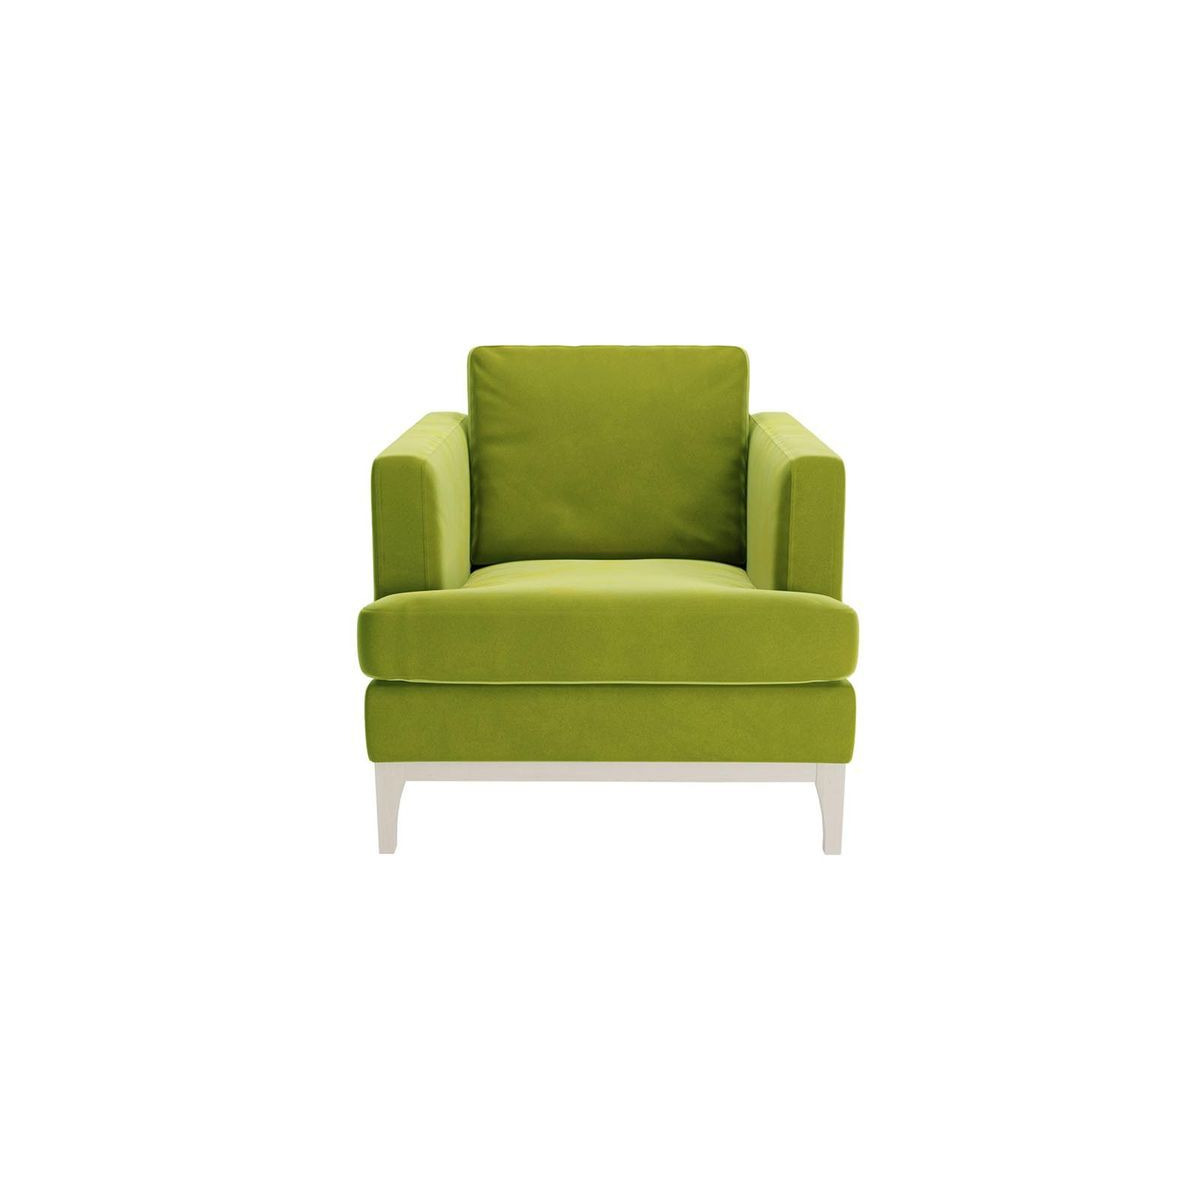 Scarlett Armchair, olive green, Leg colour: white - image 1